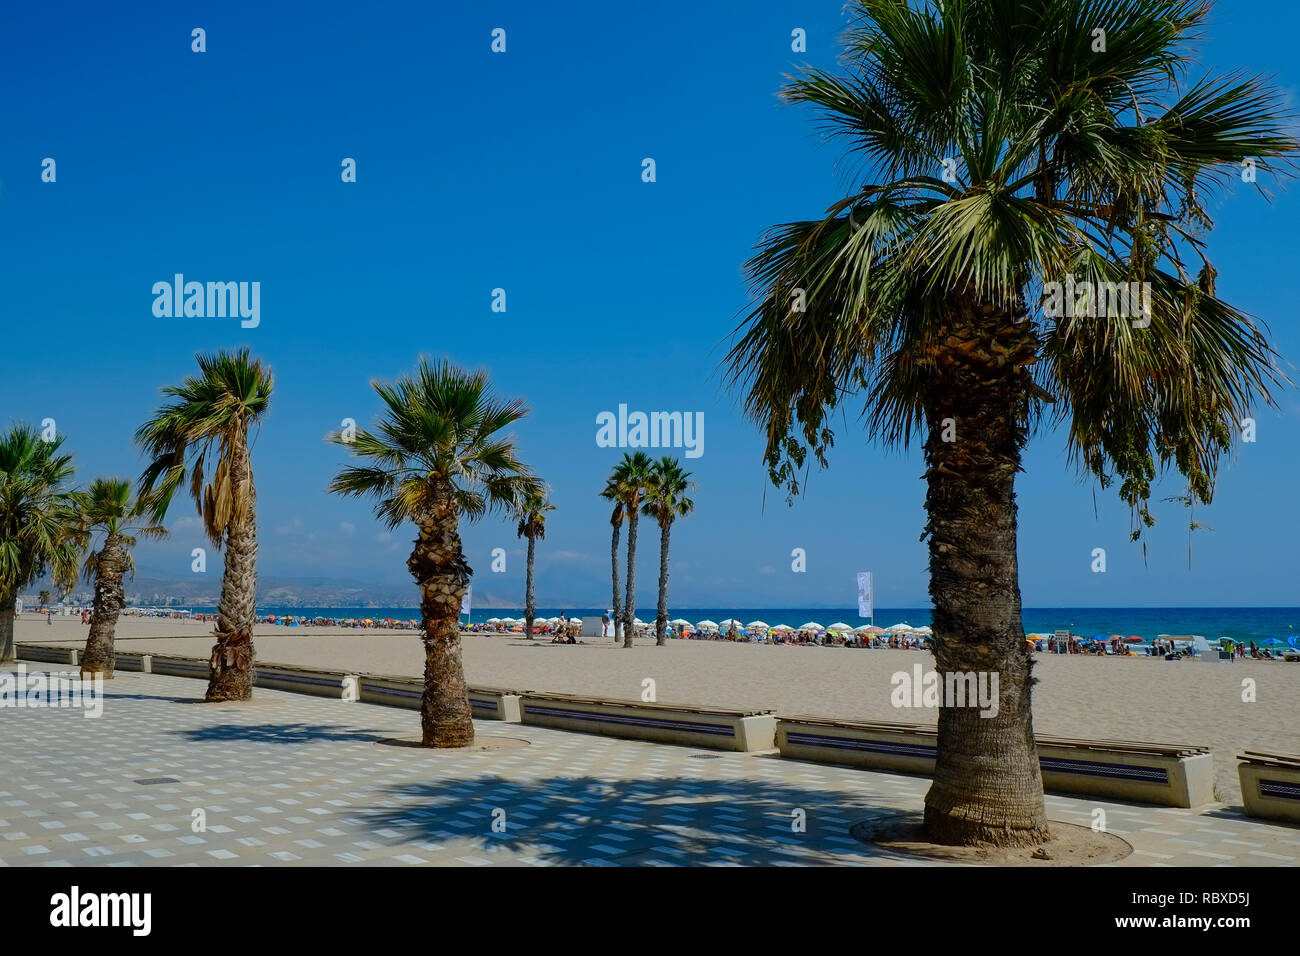 Blick von der Esplanade auf den belebten Strand. August-Wochenende. Playa San Juan, Alicante. Spanien Stockfoto